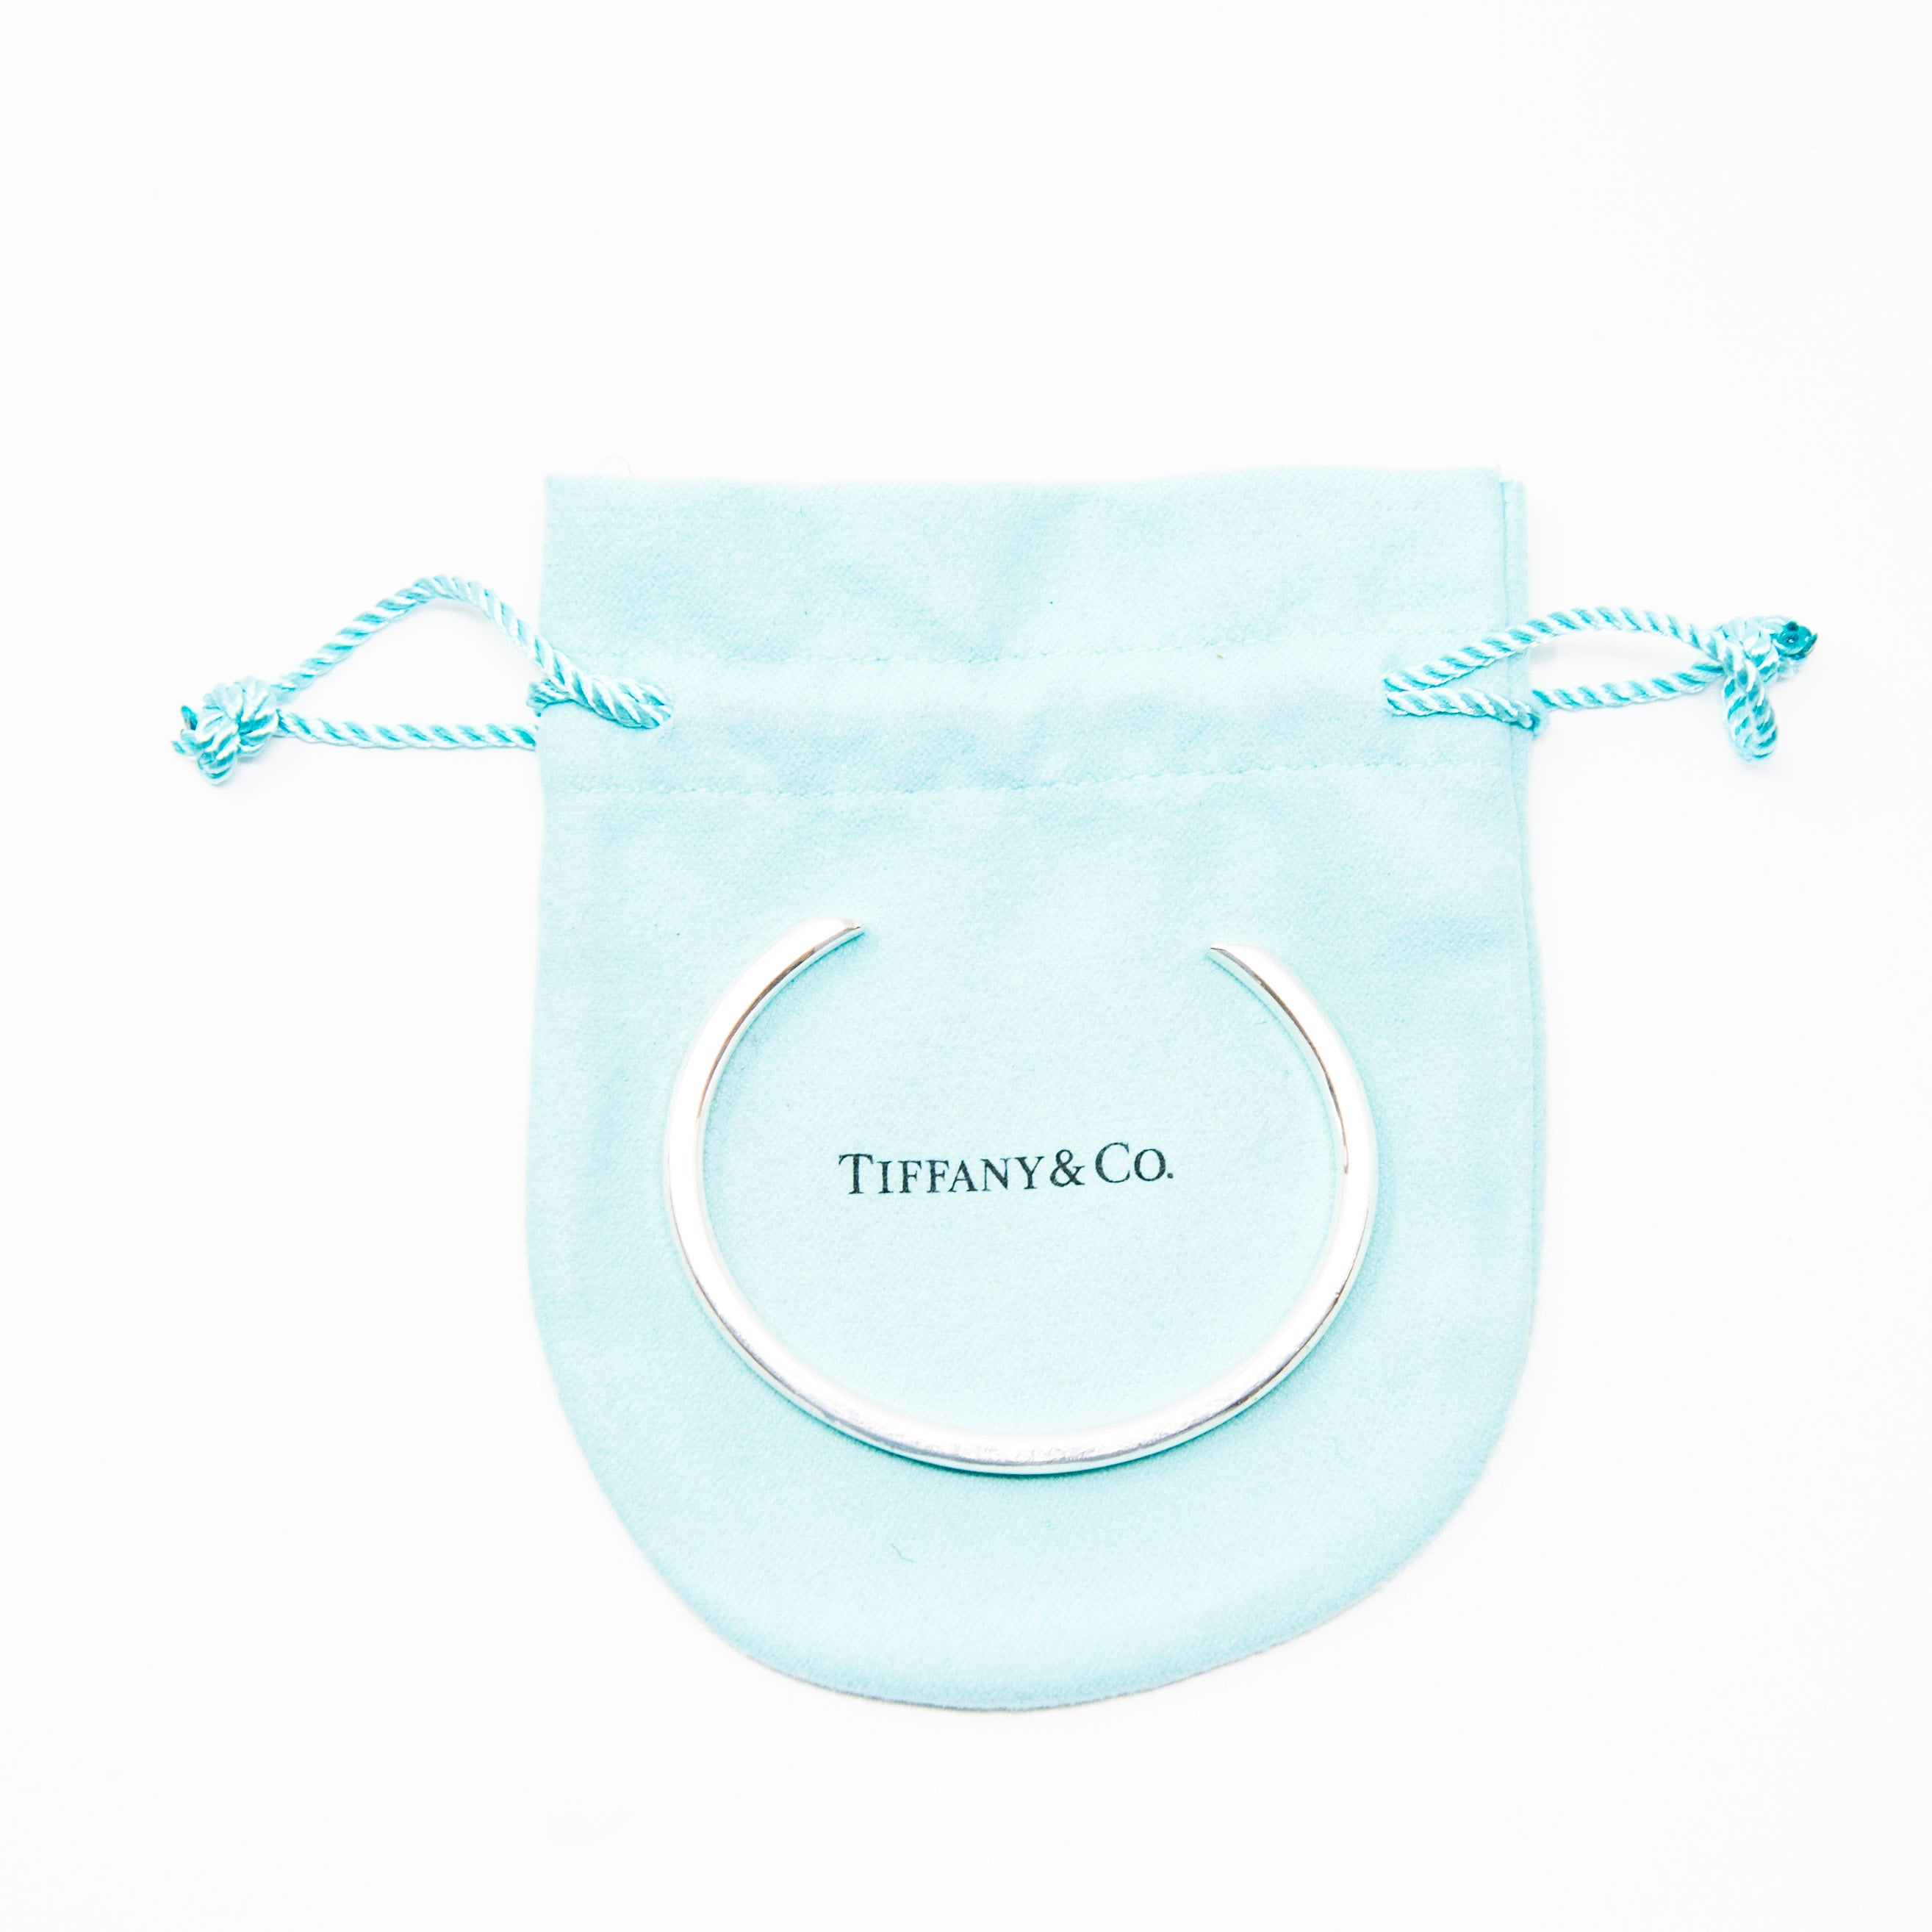 Tiffany & Co Makers Narrow Cuff